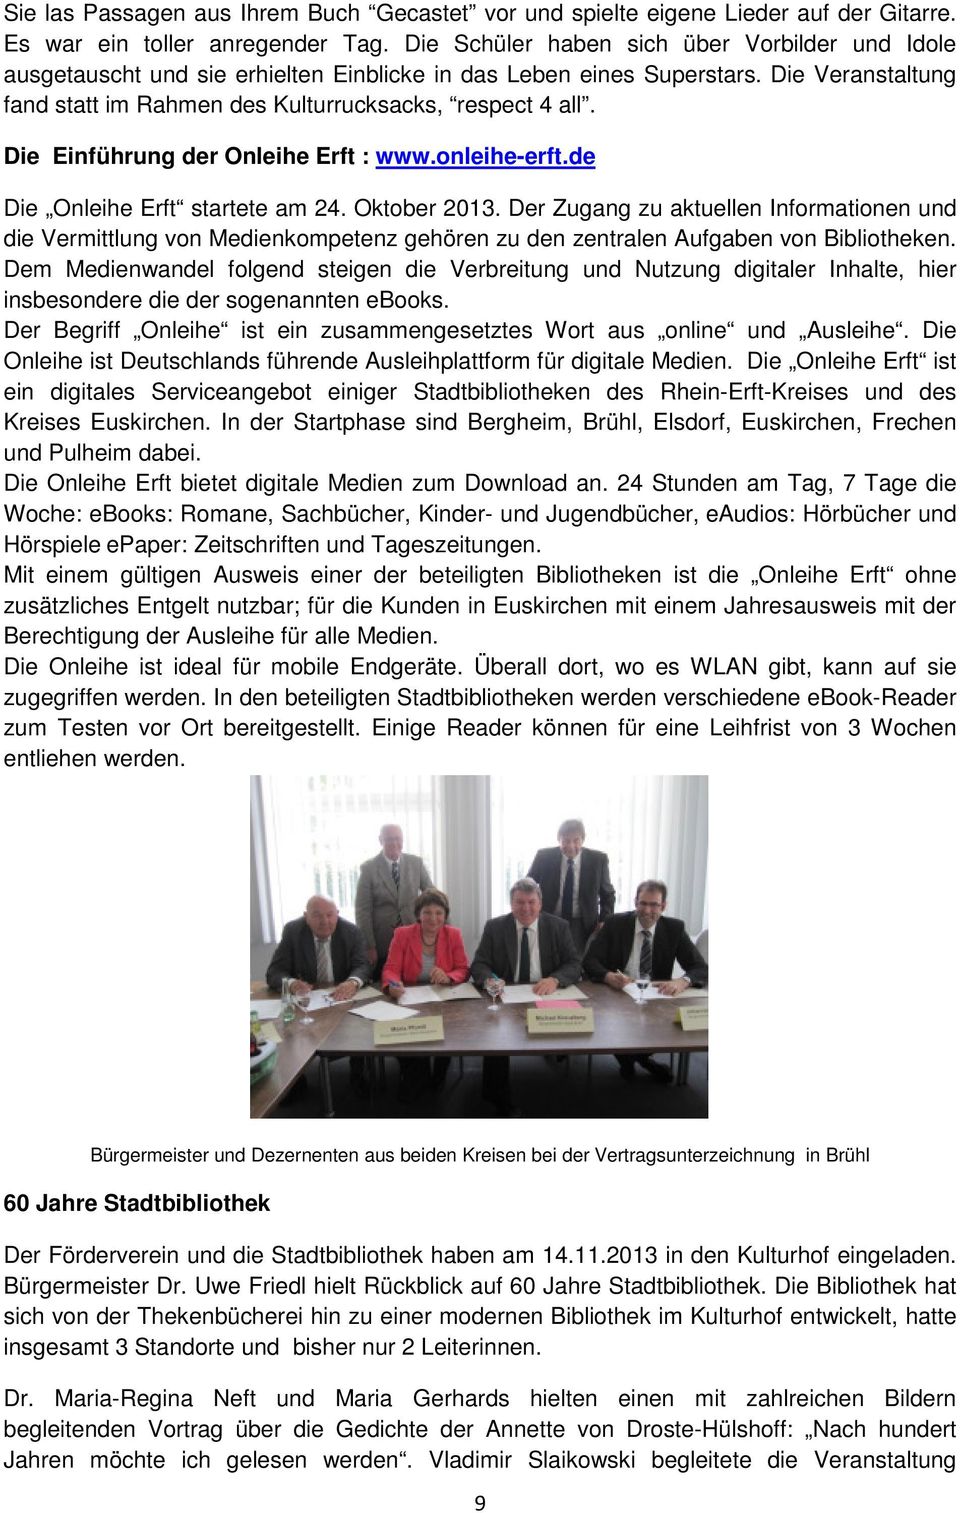 Die Einführung der Onleihe Erft : www.onleihe-erft.de Die Onleihe Erft startete am 24. Oktober 2013.